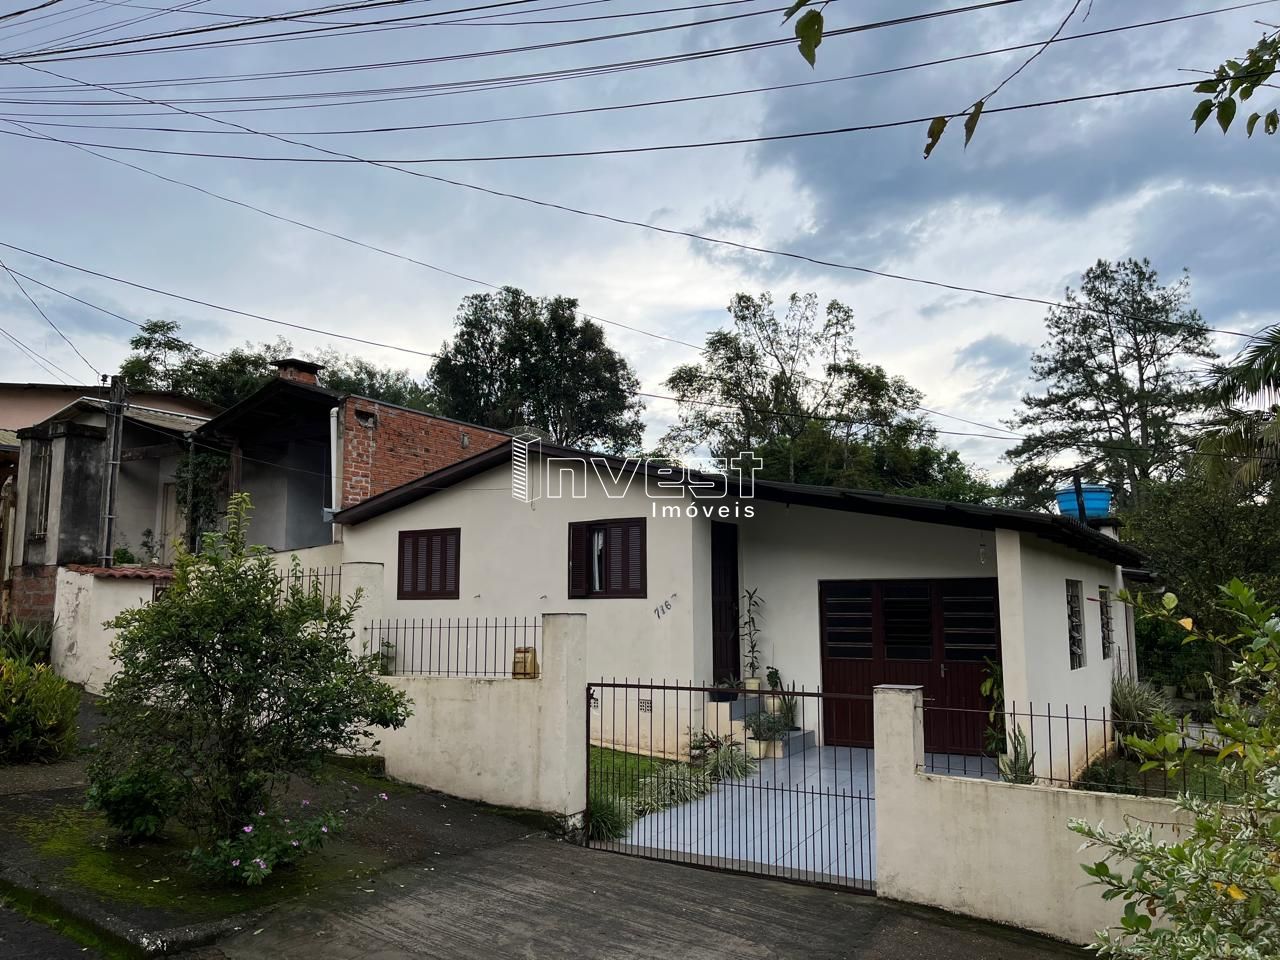 Casa  venda  no Renascena - Santa Cruz do Sul, RS. Imveis